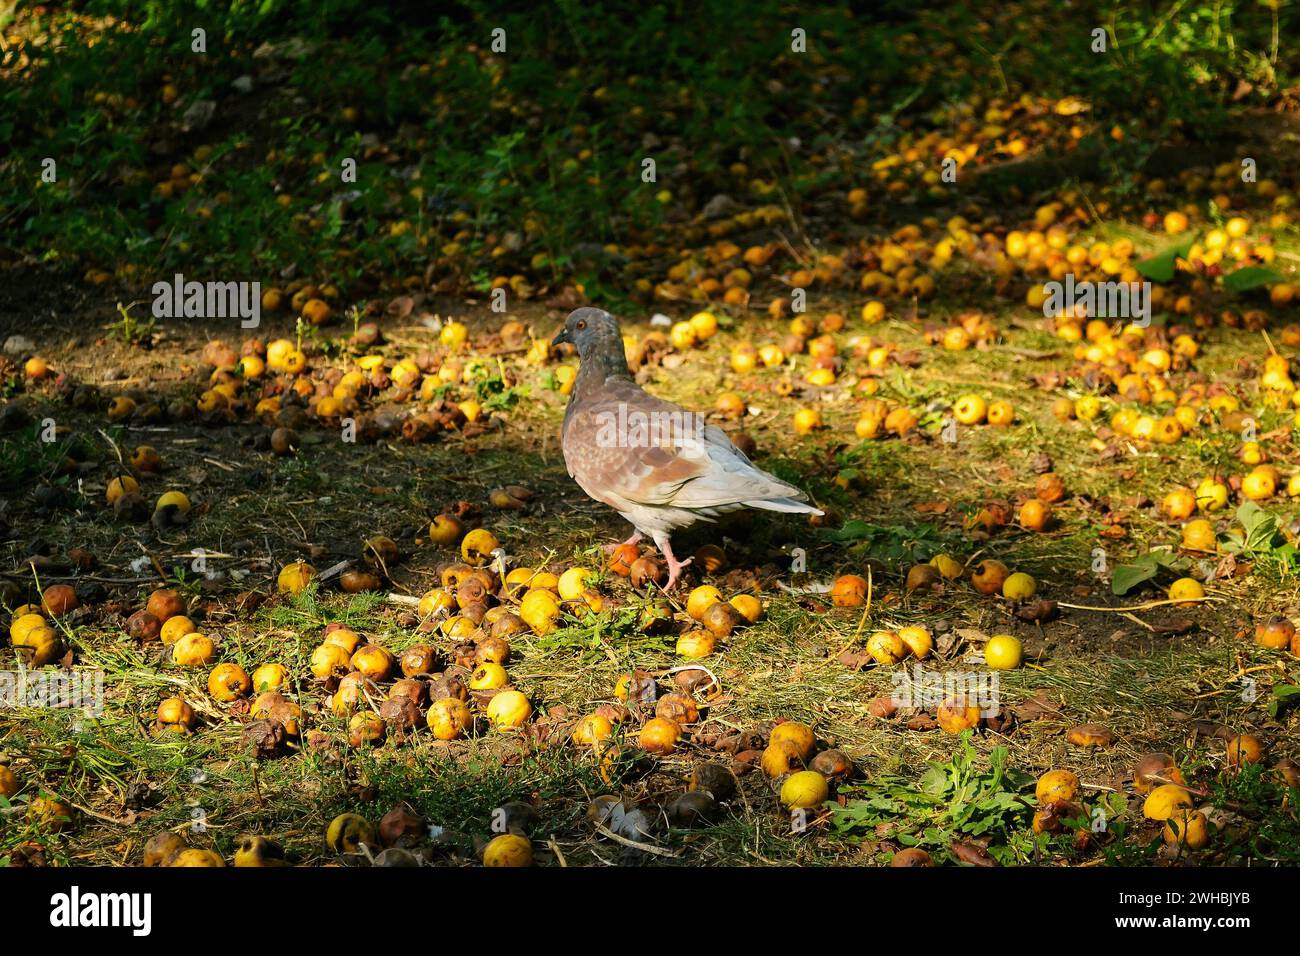 Un piccione cammina per terra tra le mele gialle cadute e marcire Foto Stock